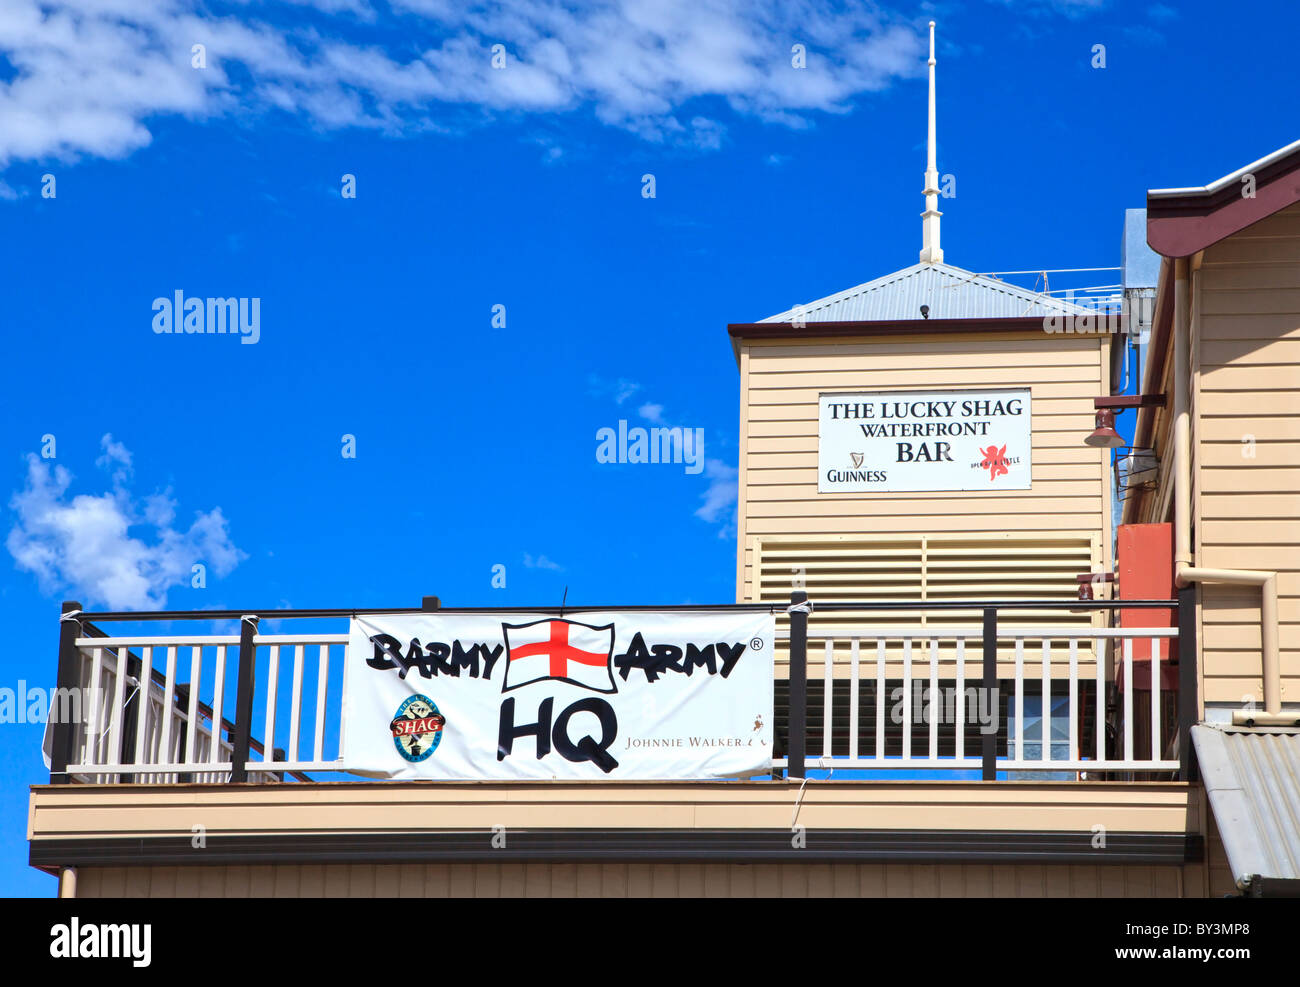 Barmy Army Siège au cours de la cendres dans la Lucky Shag Bar Waterfront à Perth, Australie occidentale Banque D'Images